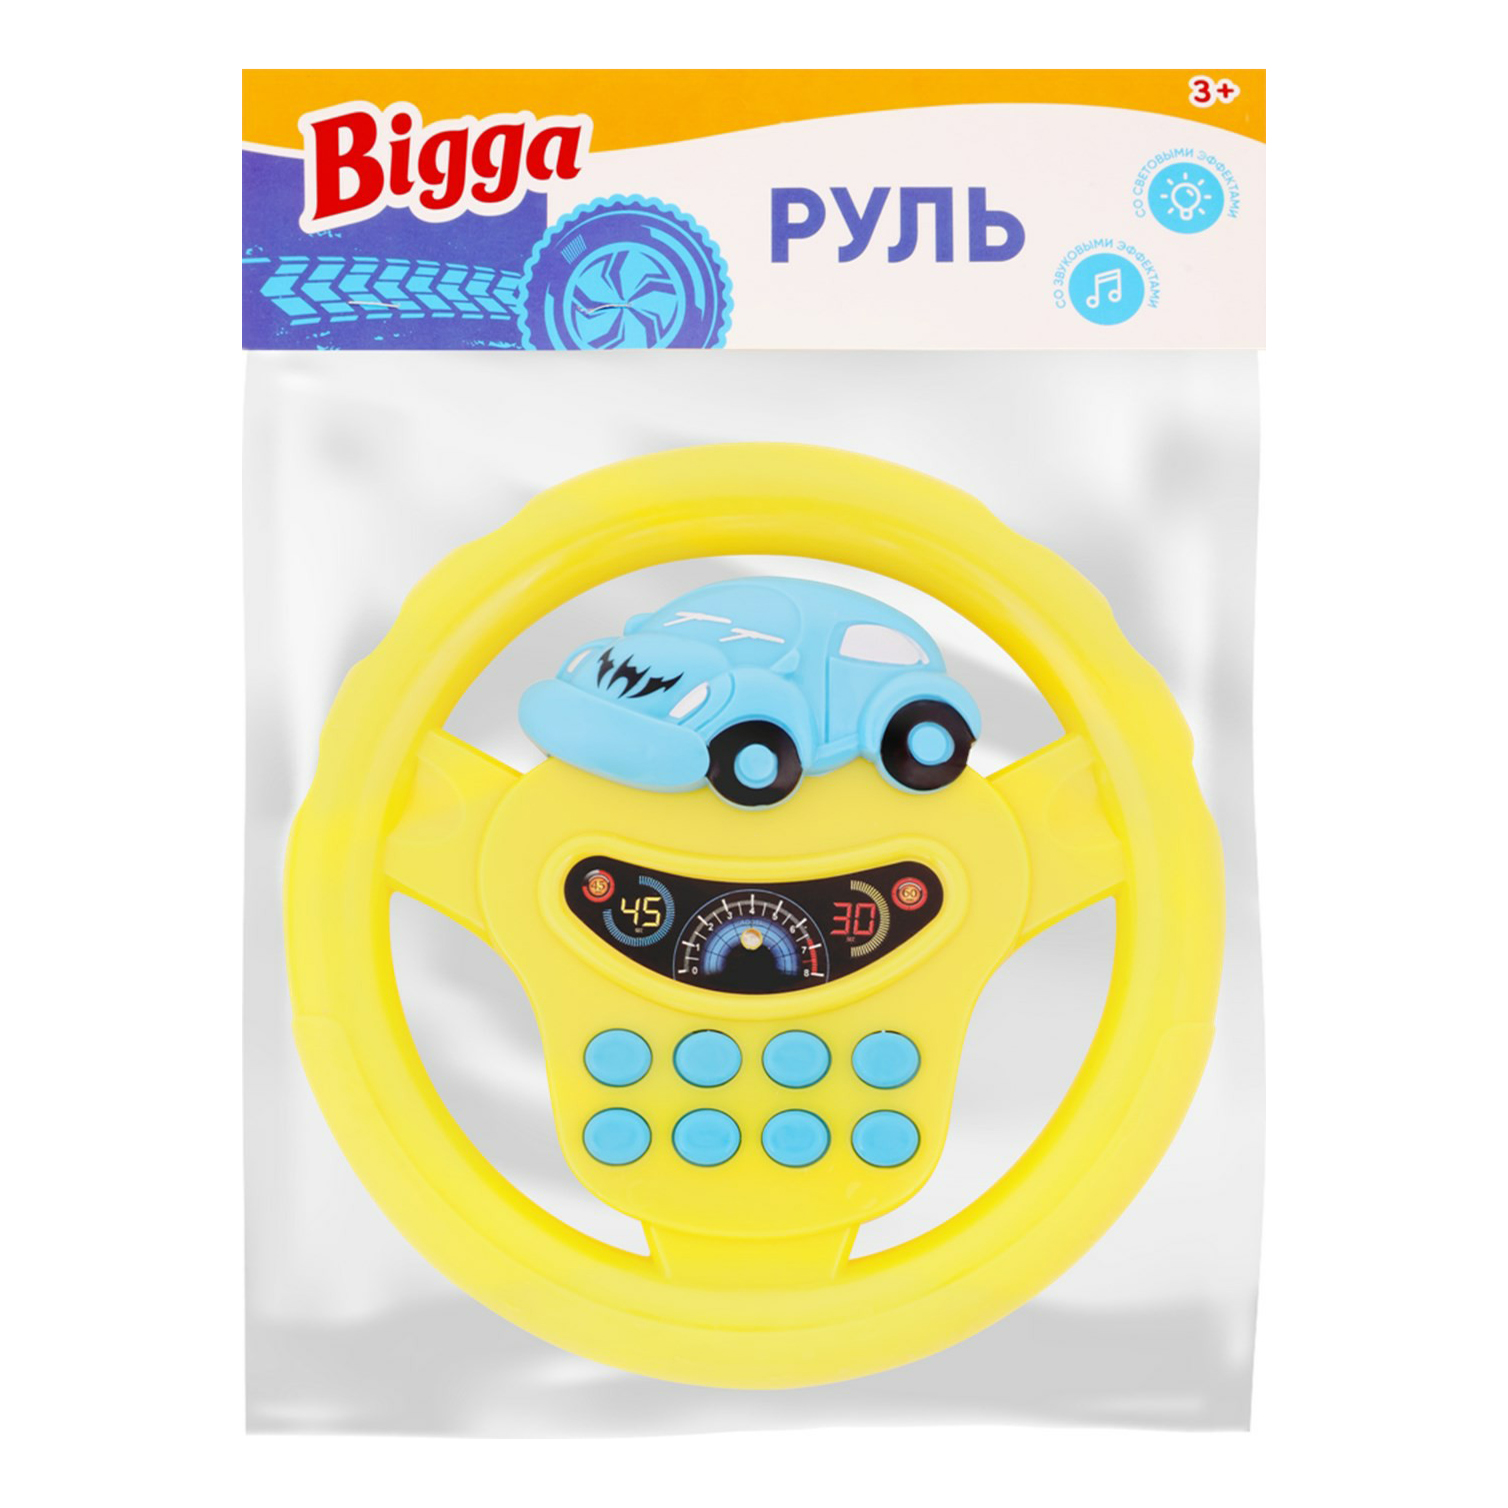 Интерактивная игрушка Bigga Руль в ассортименте (цвет по наличию)